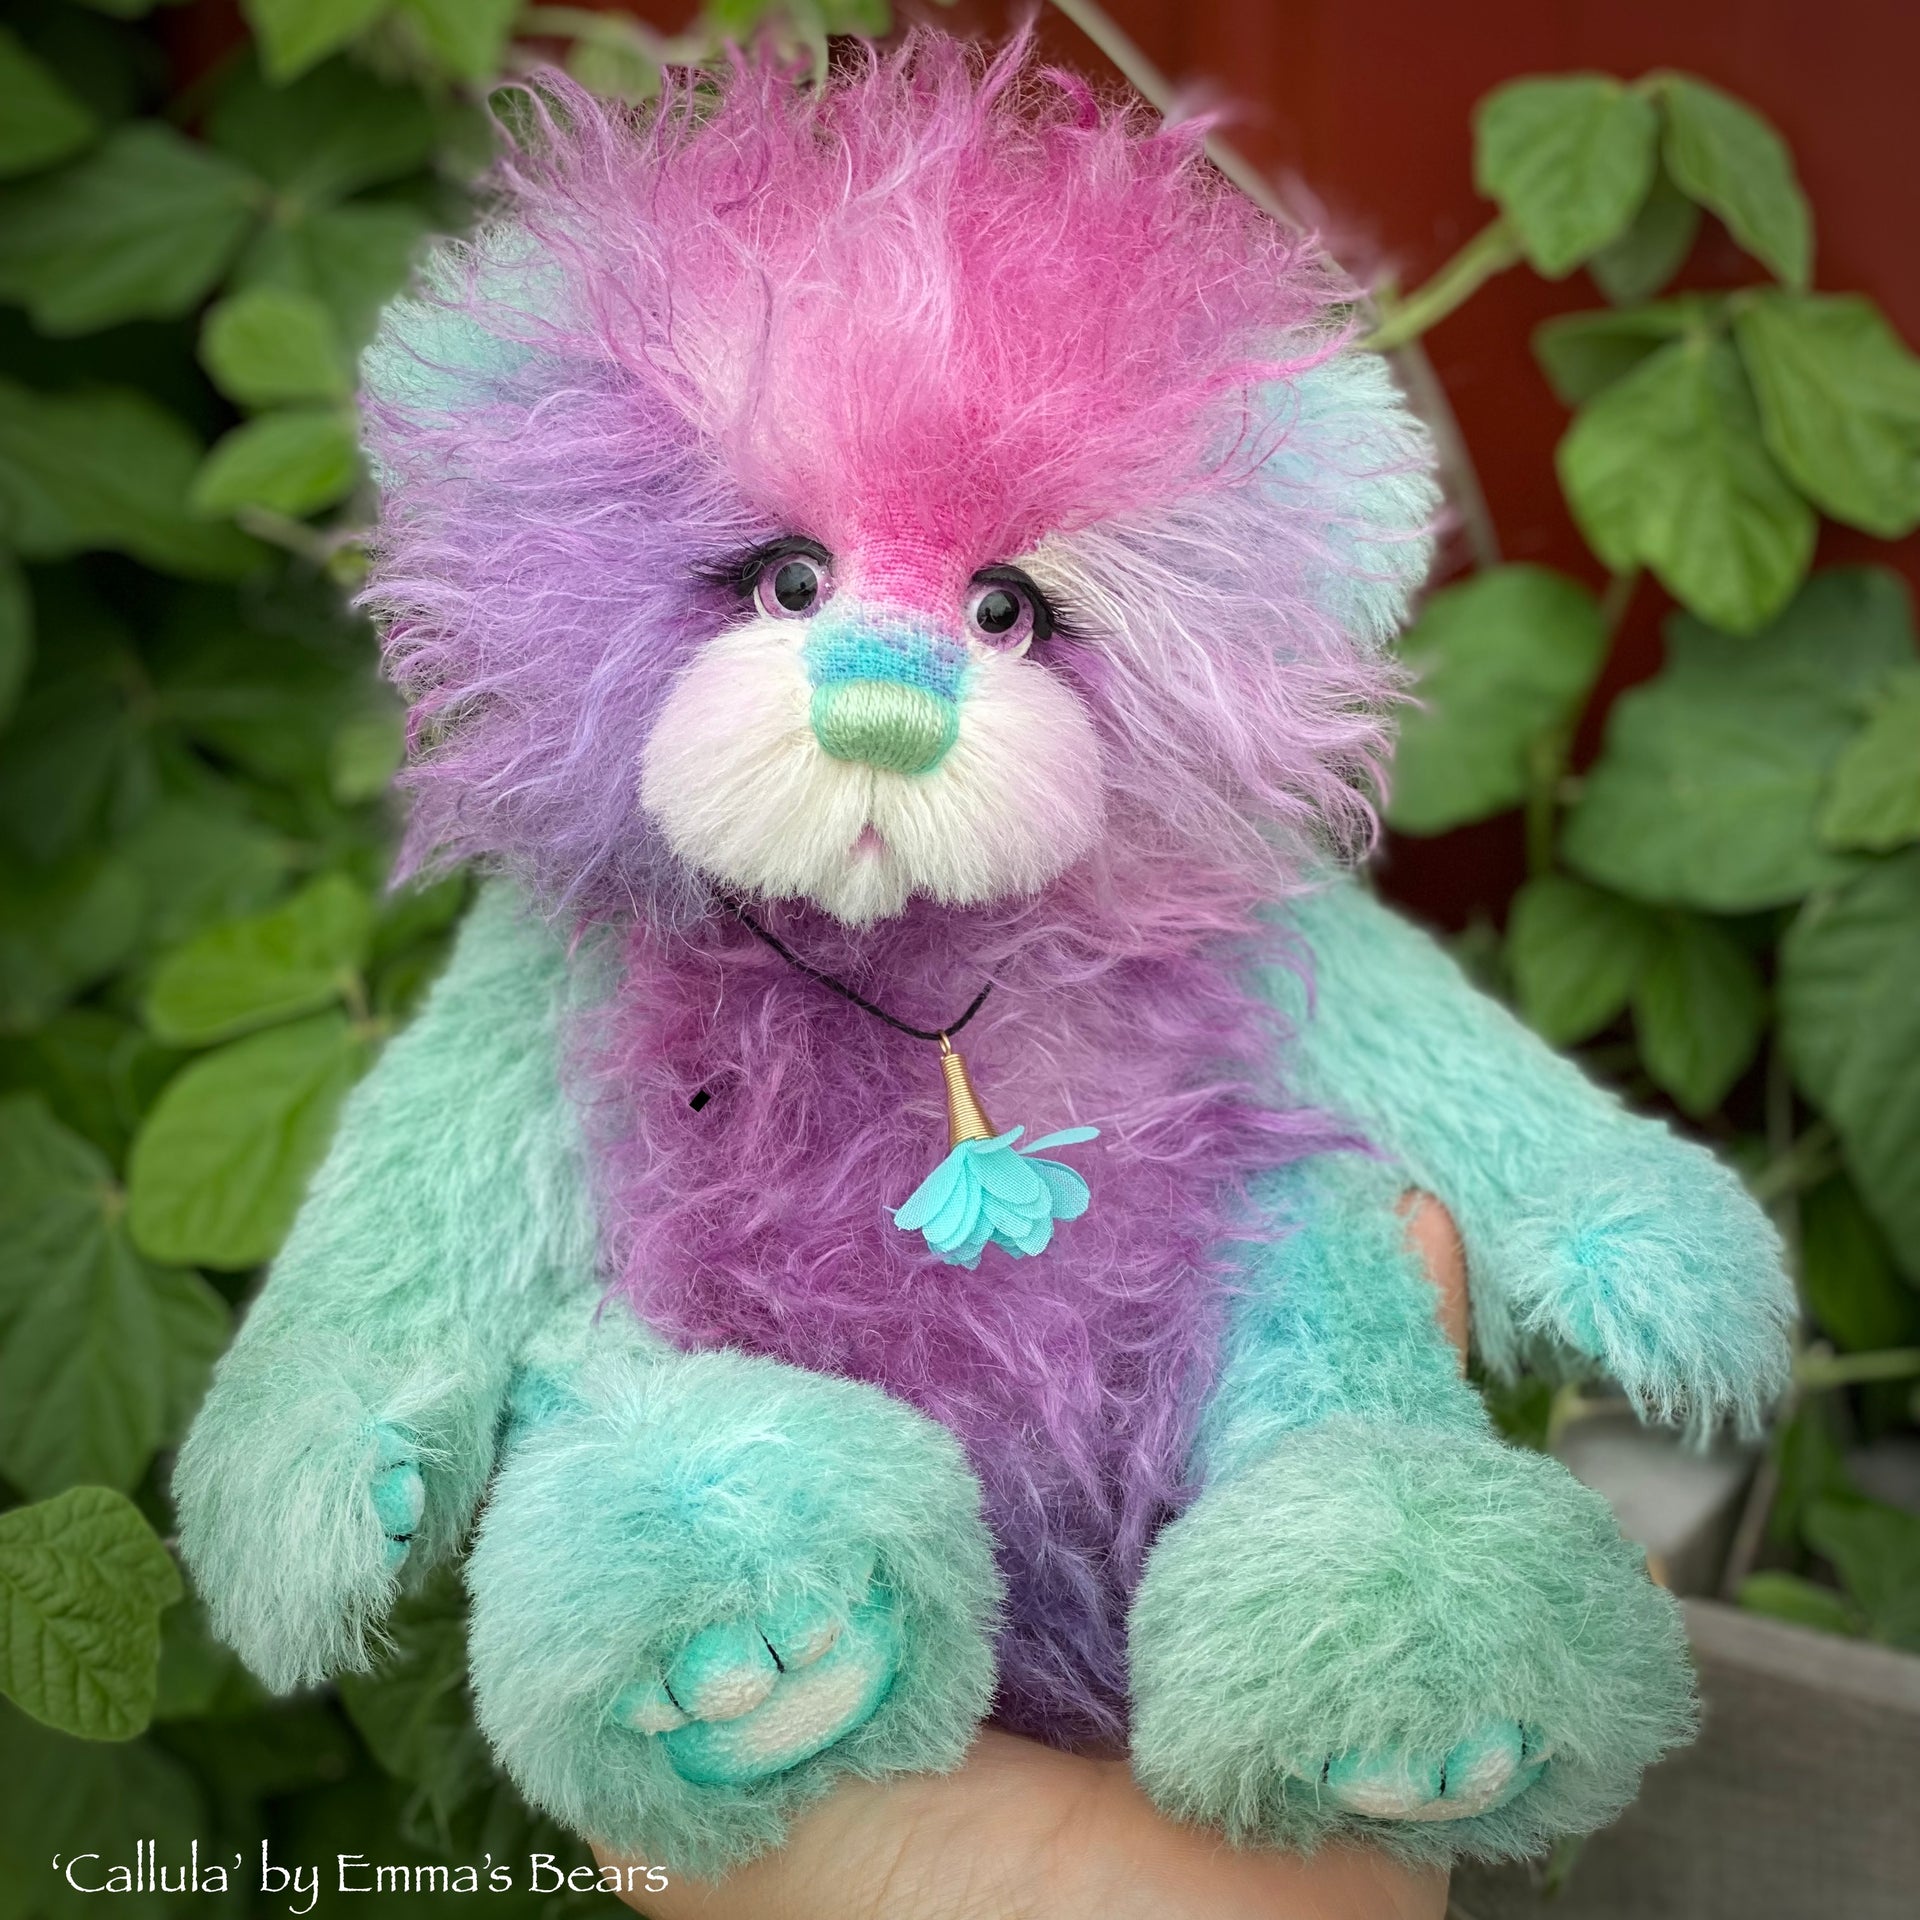 Callula - 12" Hand-Dyed Mohair and Alpaca artist bear by Emma's Bears - OOAK